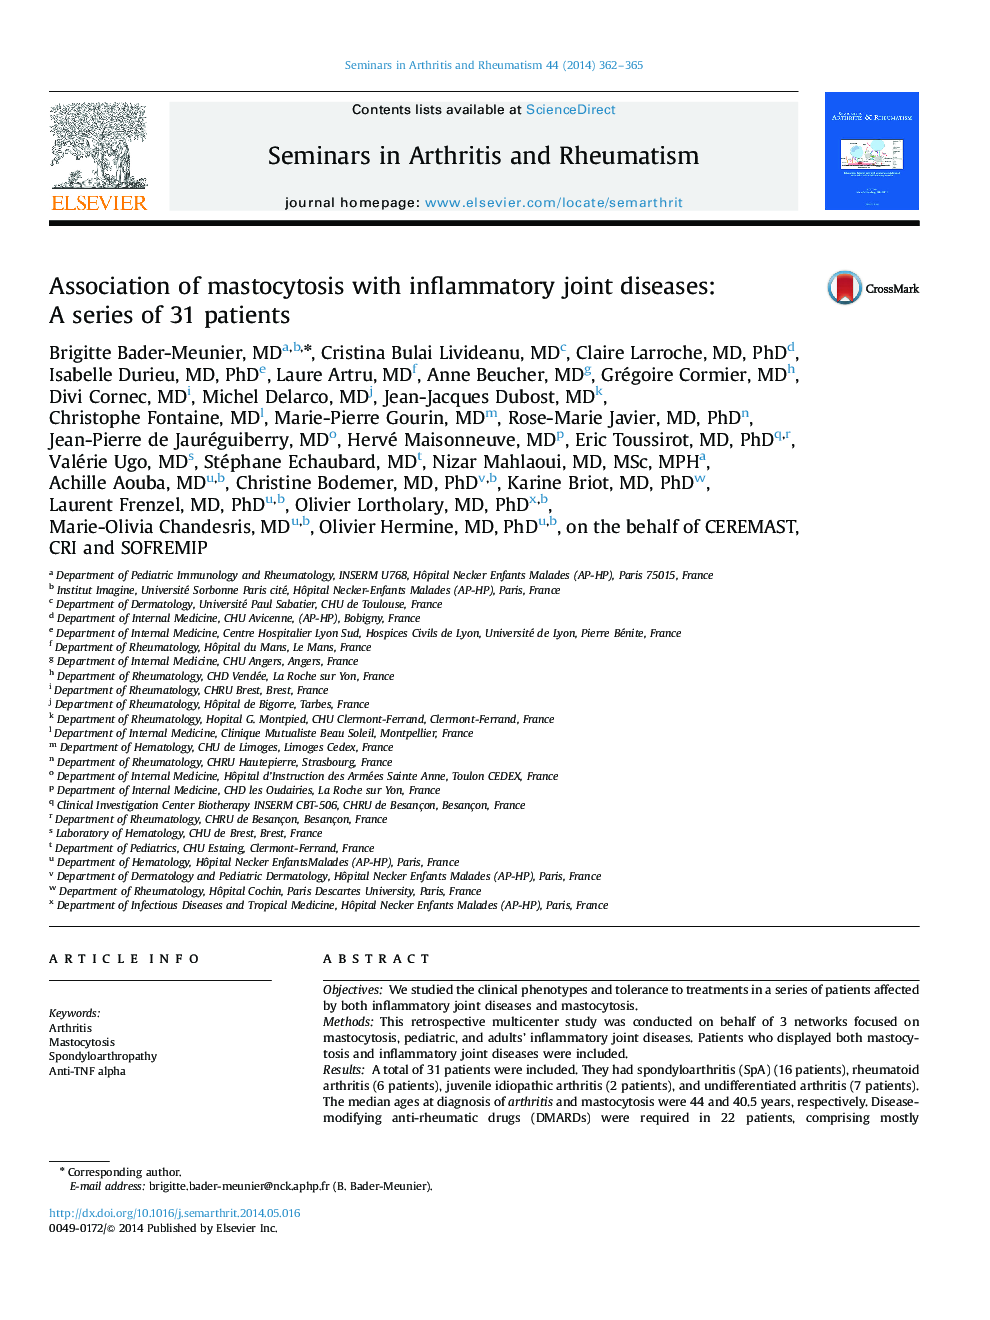 انجمن ماستوسیتوز با بیماریهای التهابی مفصلی: مجموعه ای از 31 بیمار 